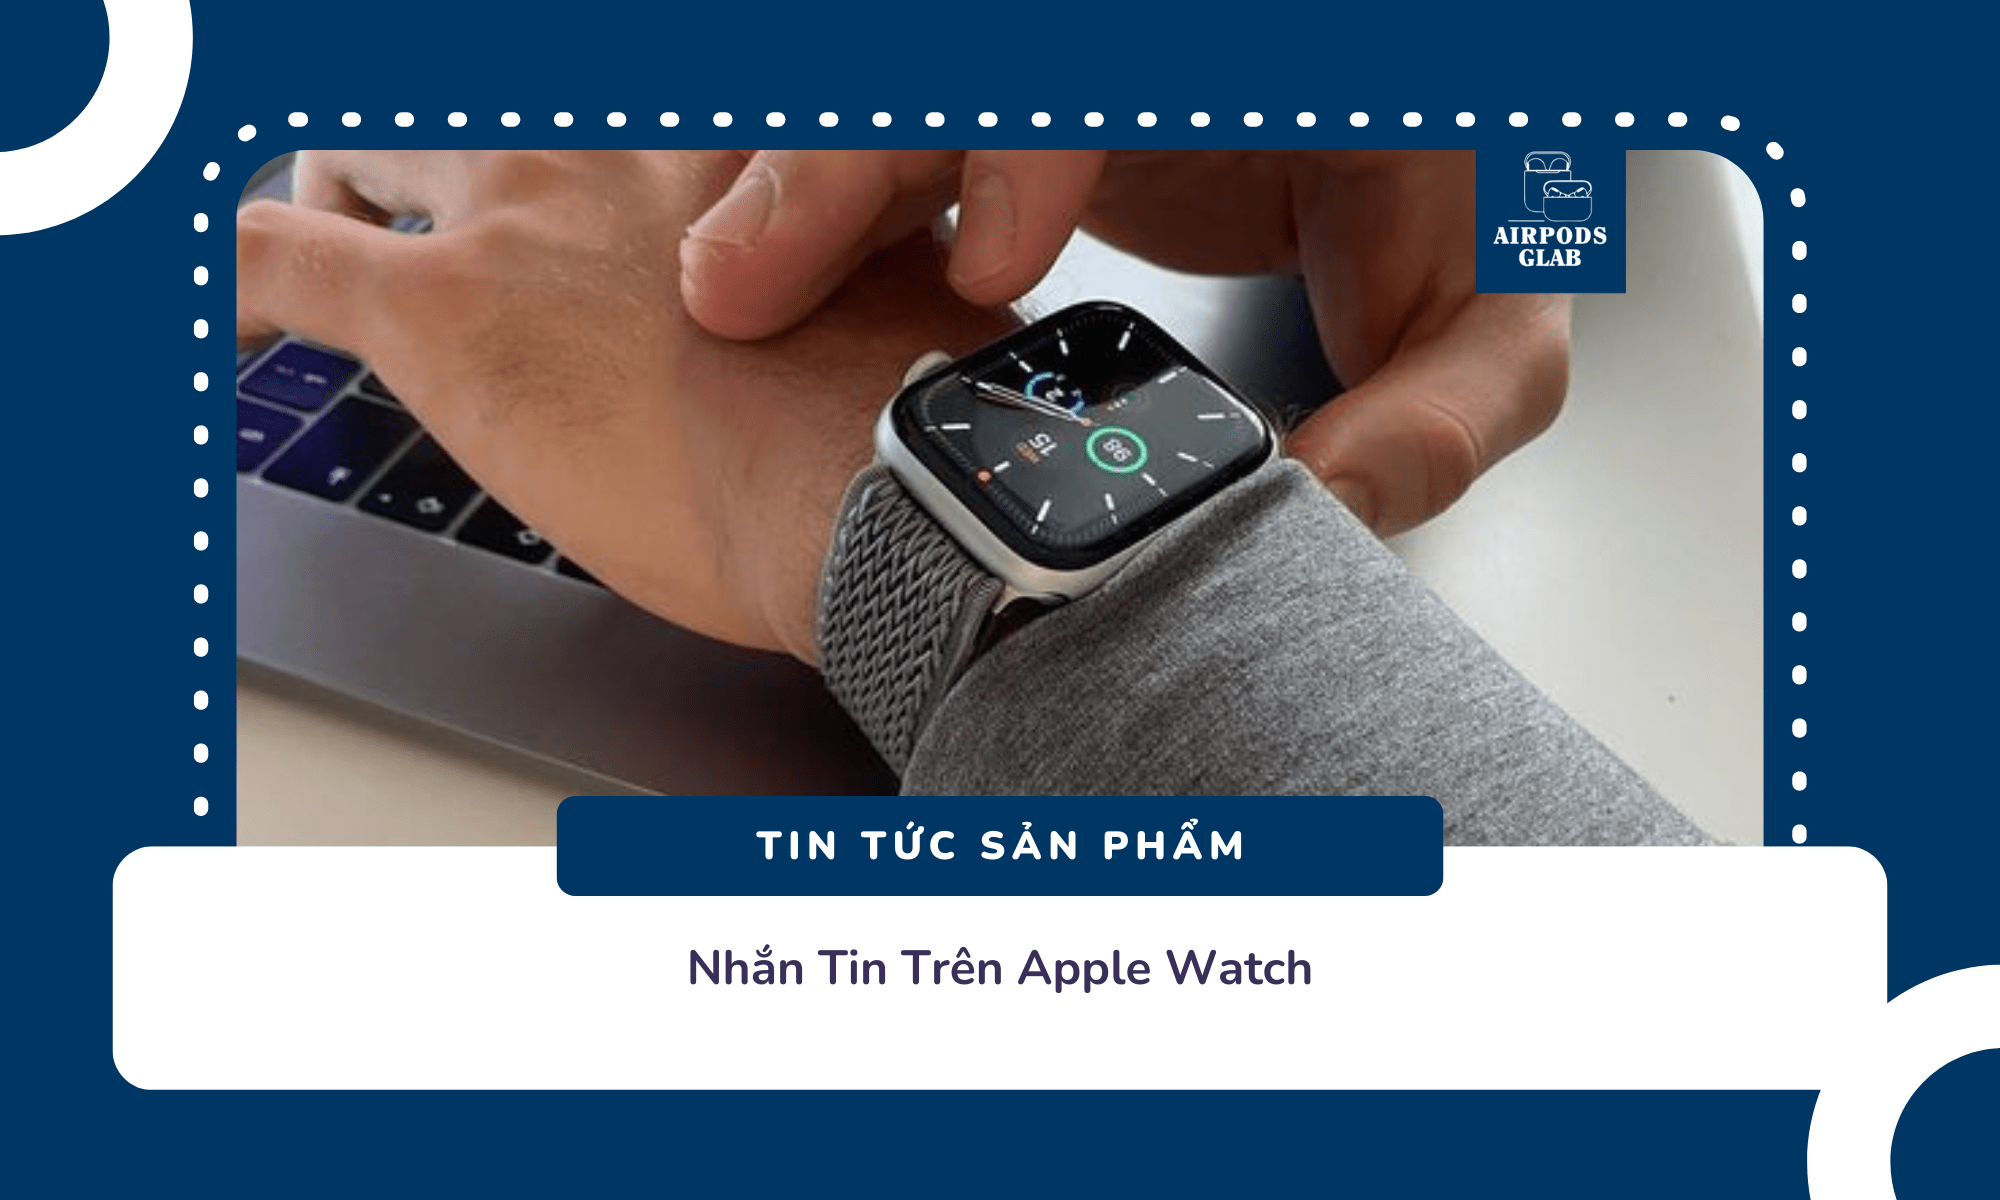 nhan-tin-tren-apple-watch 